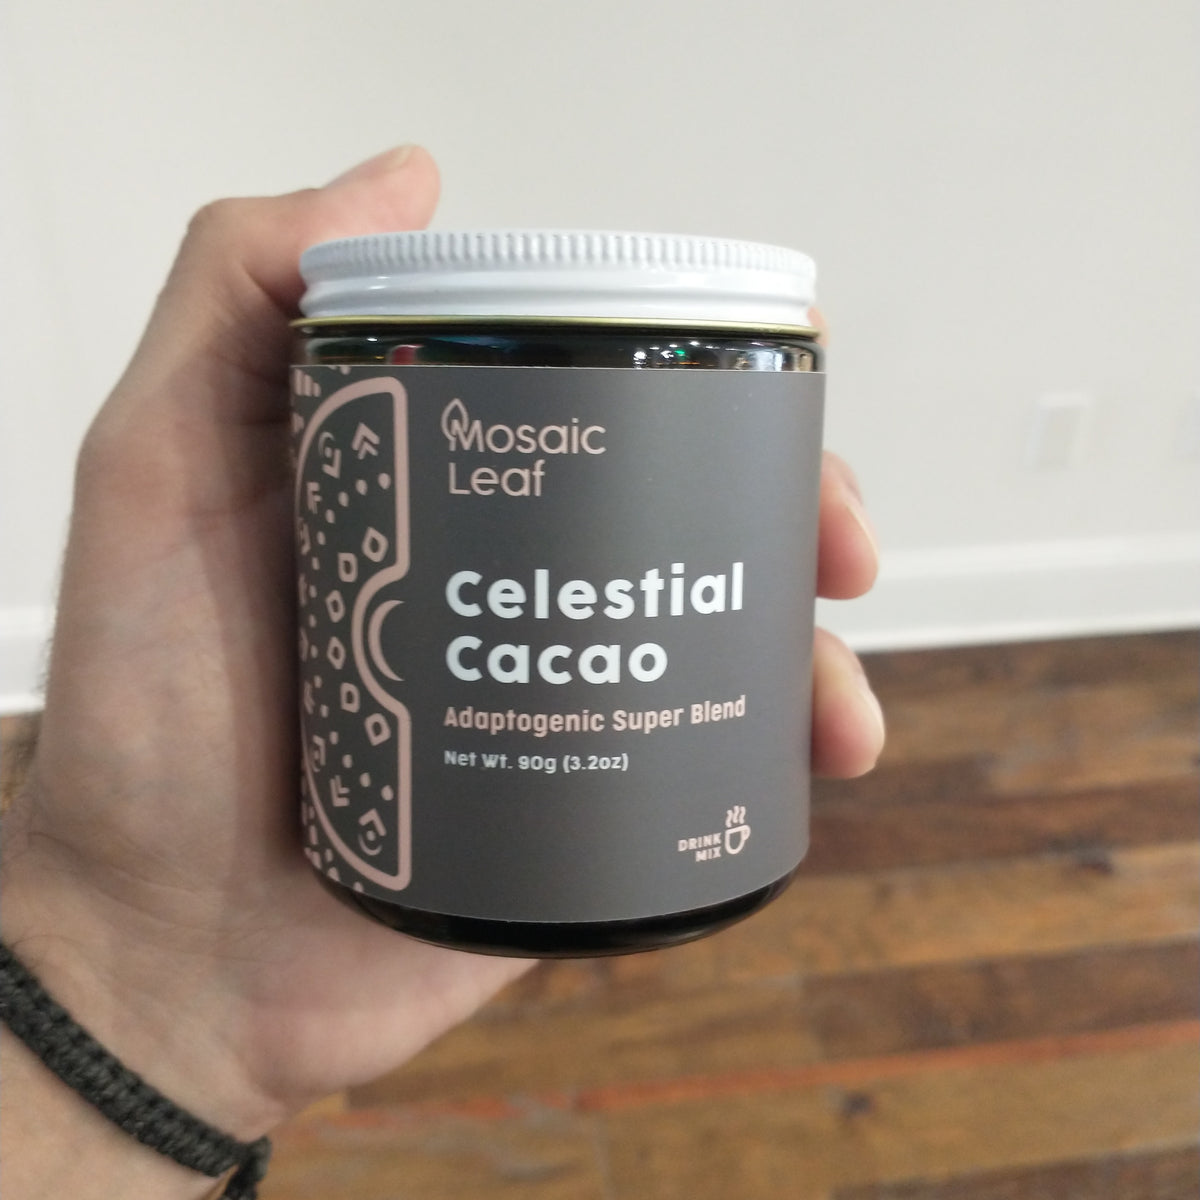 Celestial cacao